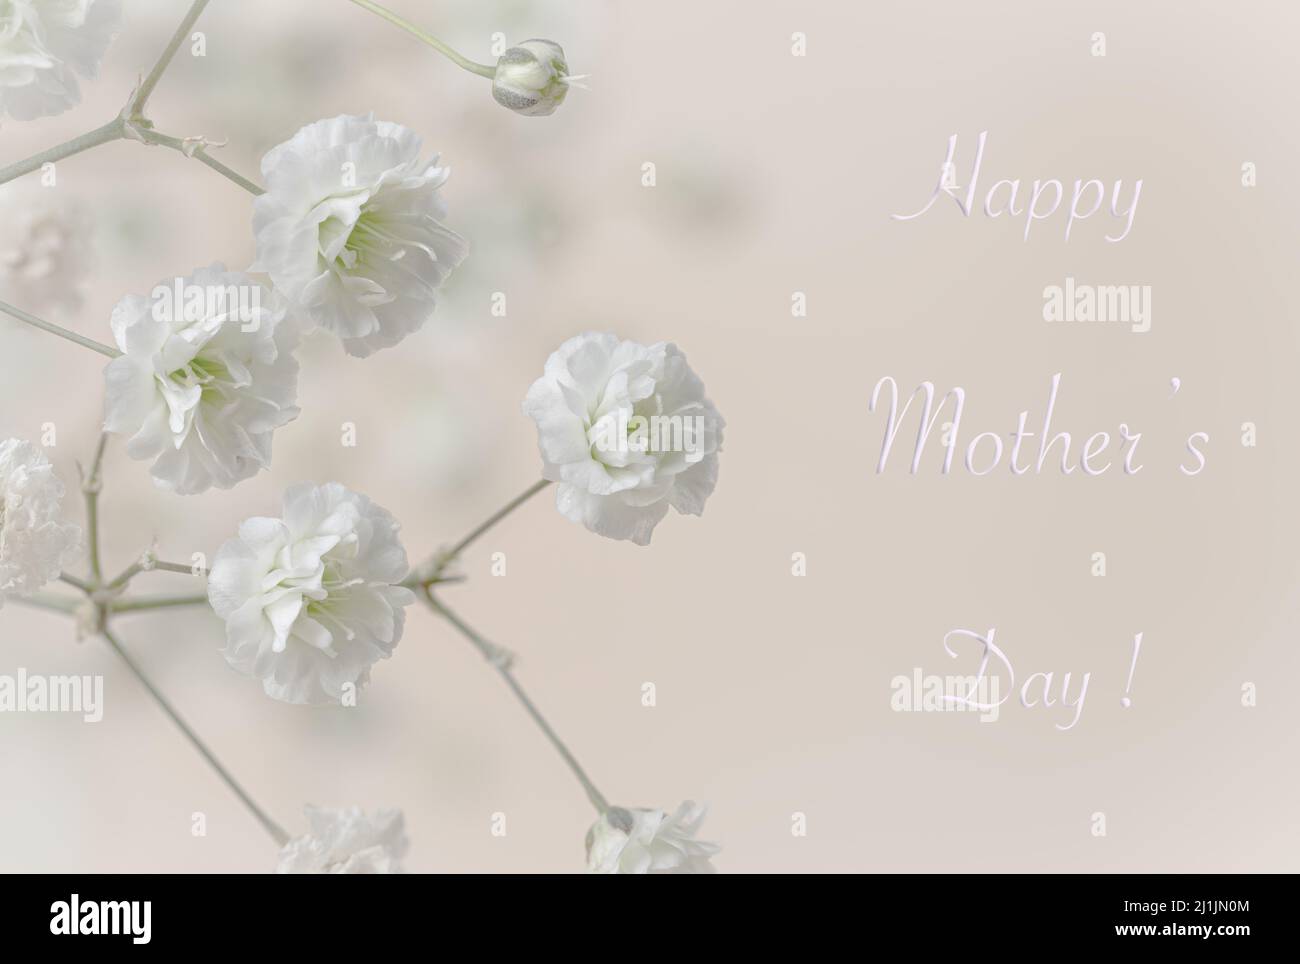 Text zum Happy Mothers Day mit Nahaufnahme von Baby's Breath Blumen auf einem rosa Hintergrund Stockfoto